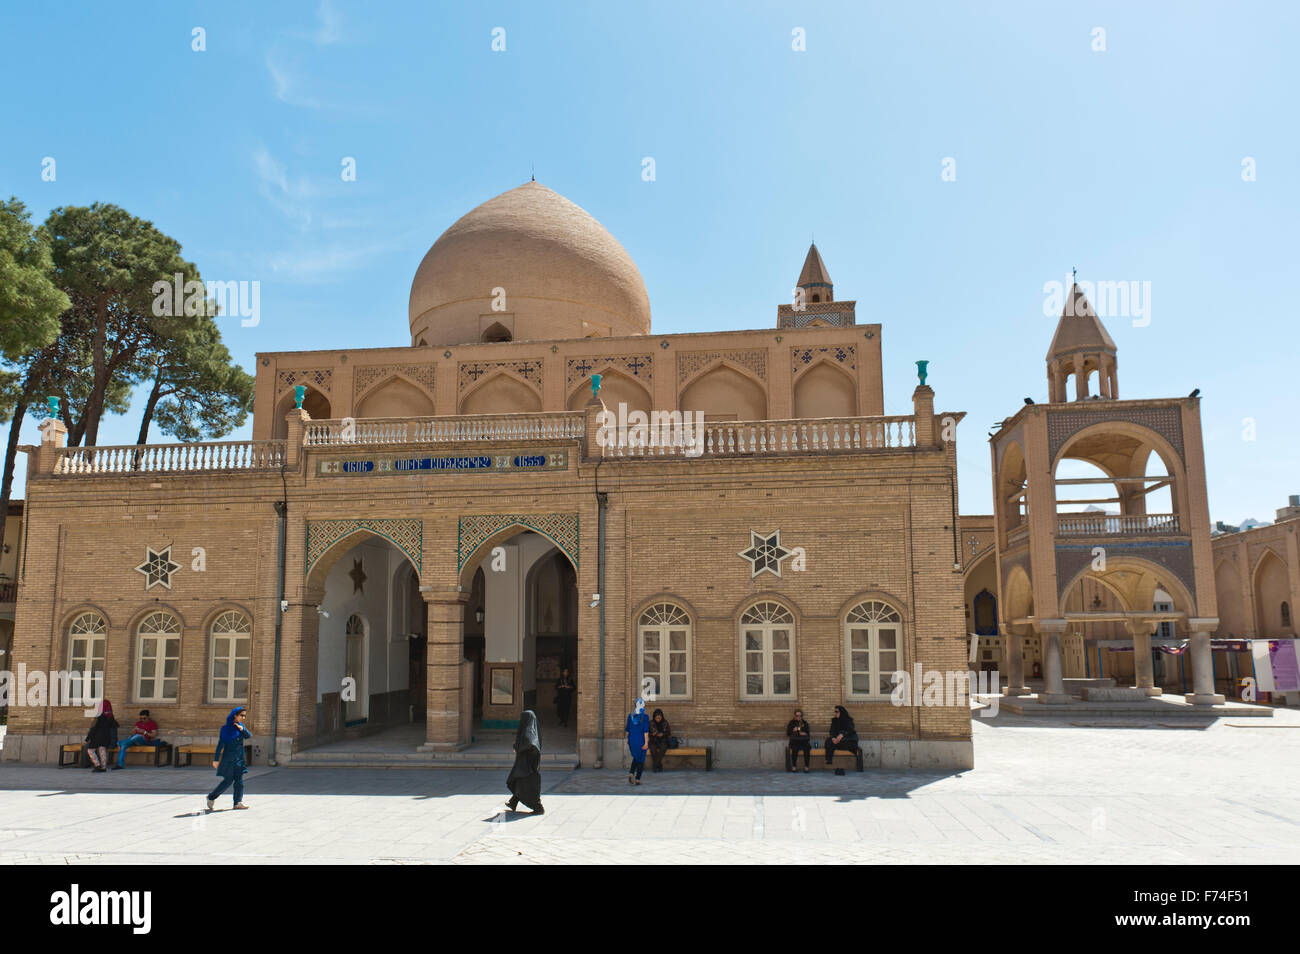 Eglise apostolique arménienne, plafonnier et Bell Tower, la cathédrale de Vank, Nouvelle Julfa, Isfahan, Iran Banque D'Images